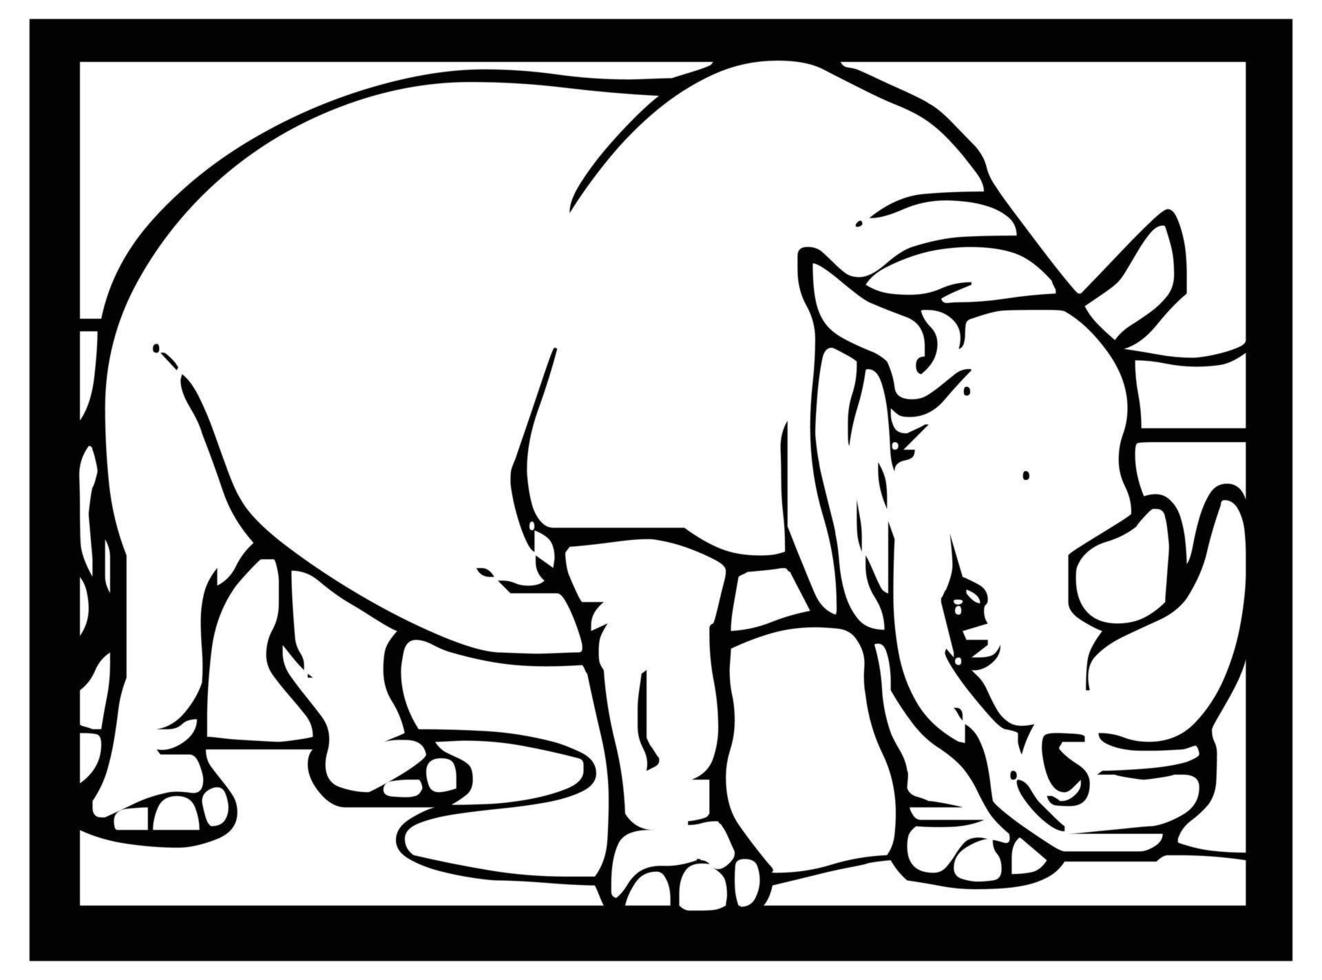 bocetos de rinoceronte sobre fondo blanco y negro en un marco para cómics o aprender a colorear para niños. vector